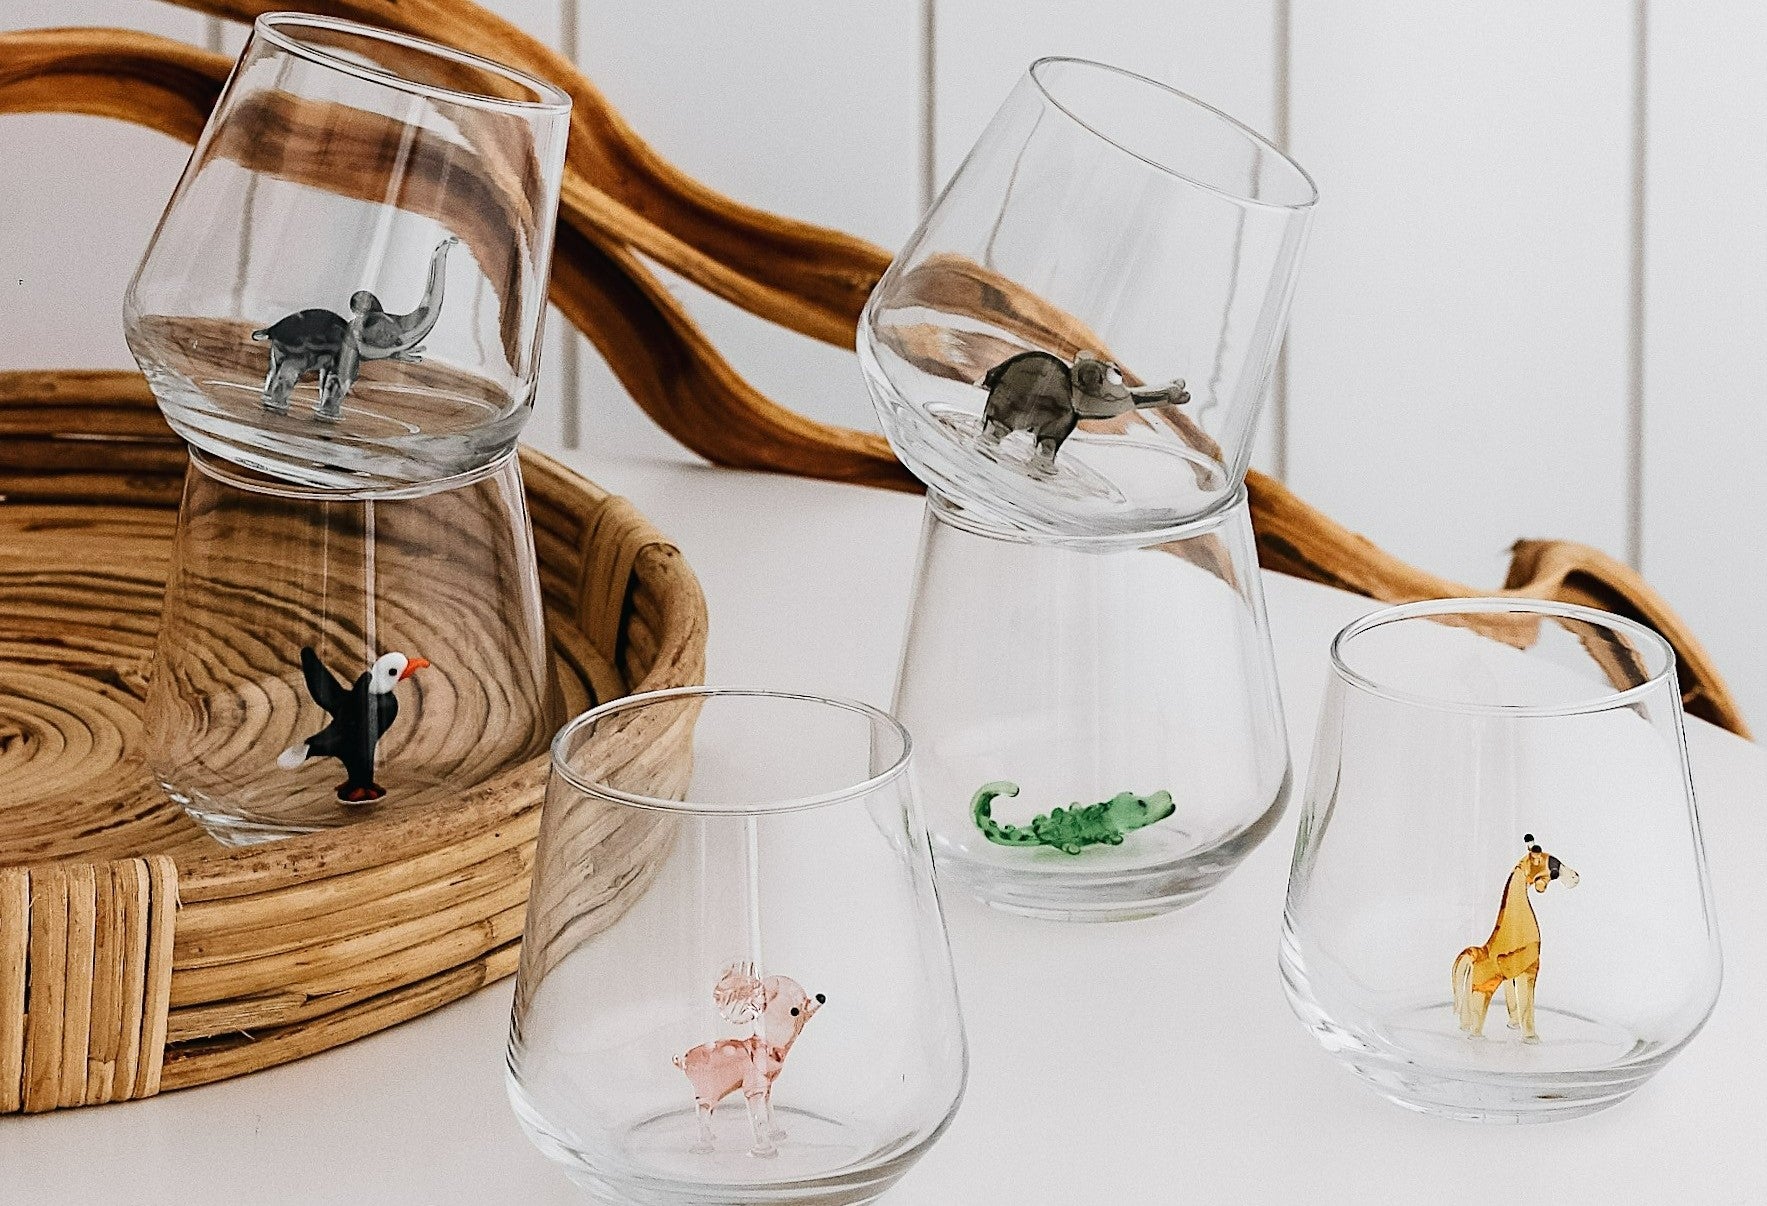 Safari Theme Drinking Glass Set of 6 with Handmade Animal Figures